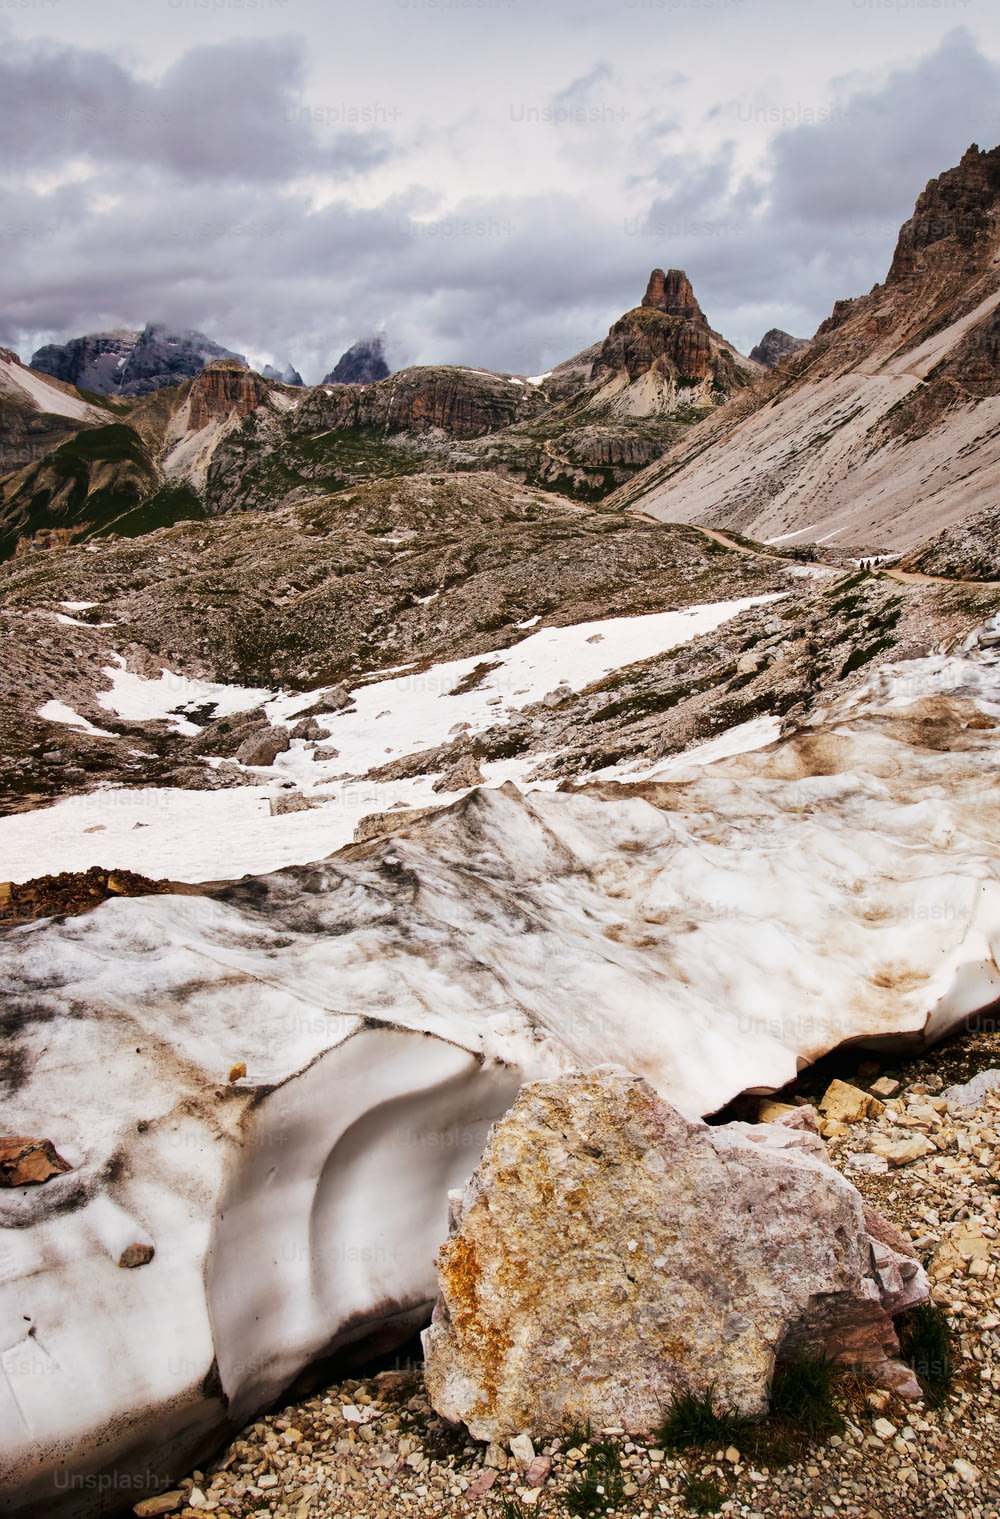 Un paisaje de montaña con nieve en el suelo y rocas en el suelo